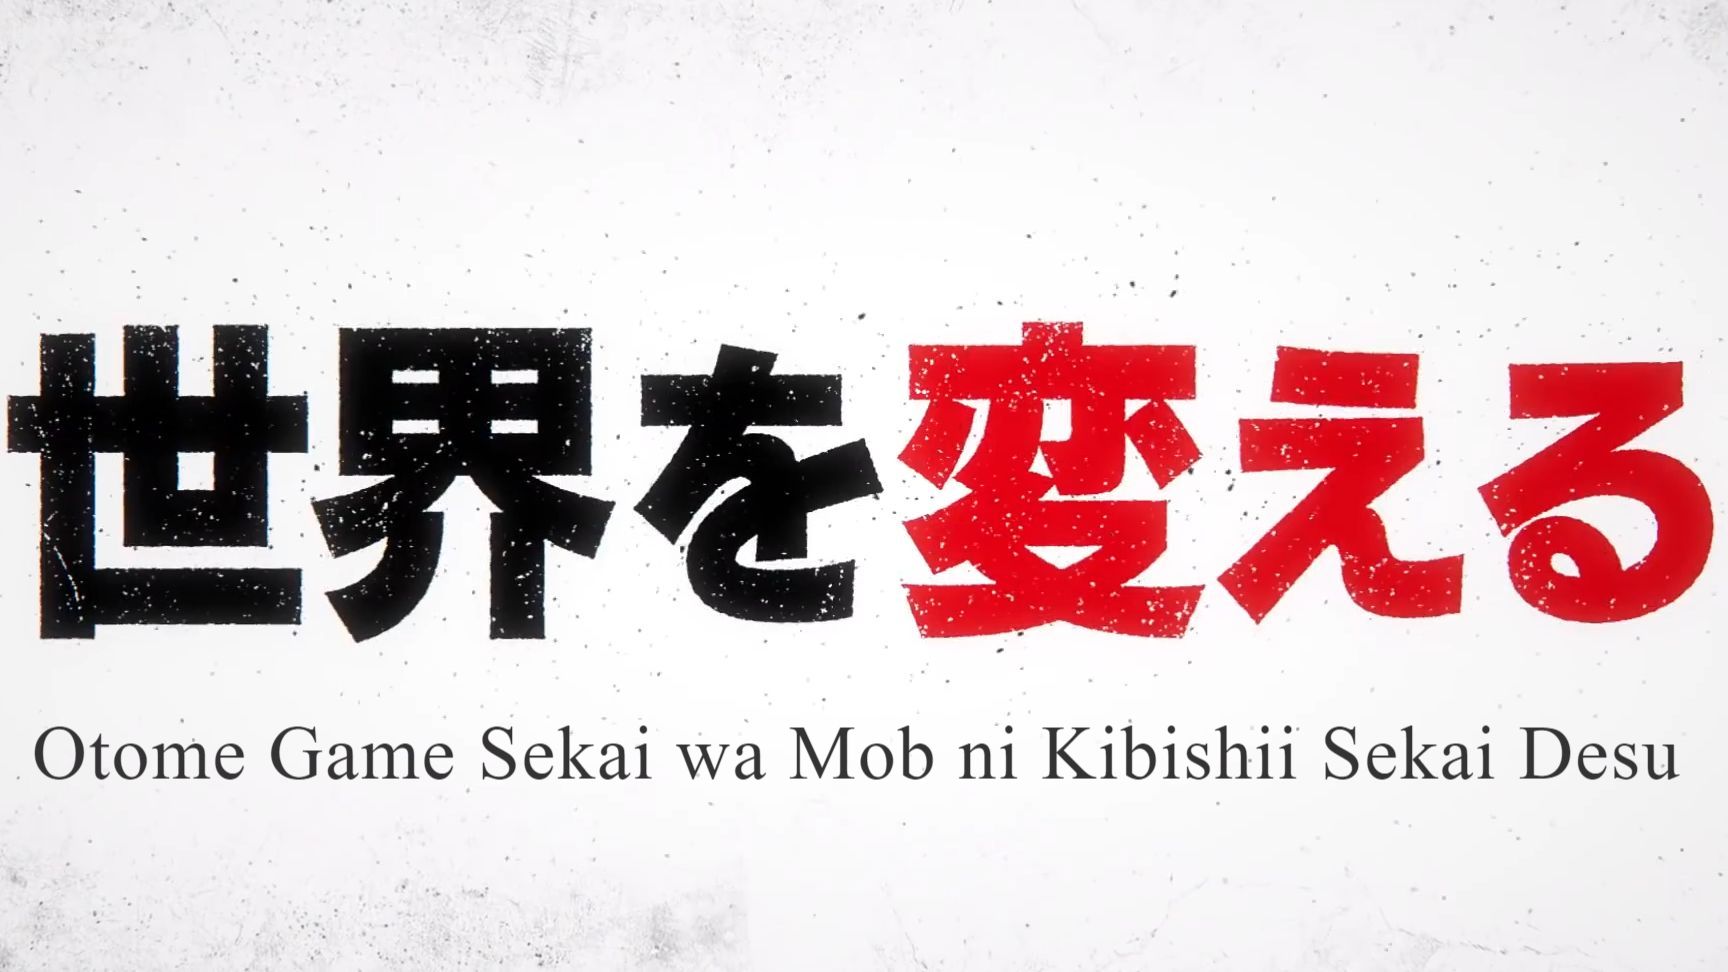 Otome Game Sekai wa Mob ni Kibishii Sekai desu - ‼️TRAILER OFICIAL ‼️ 